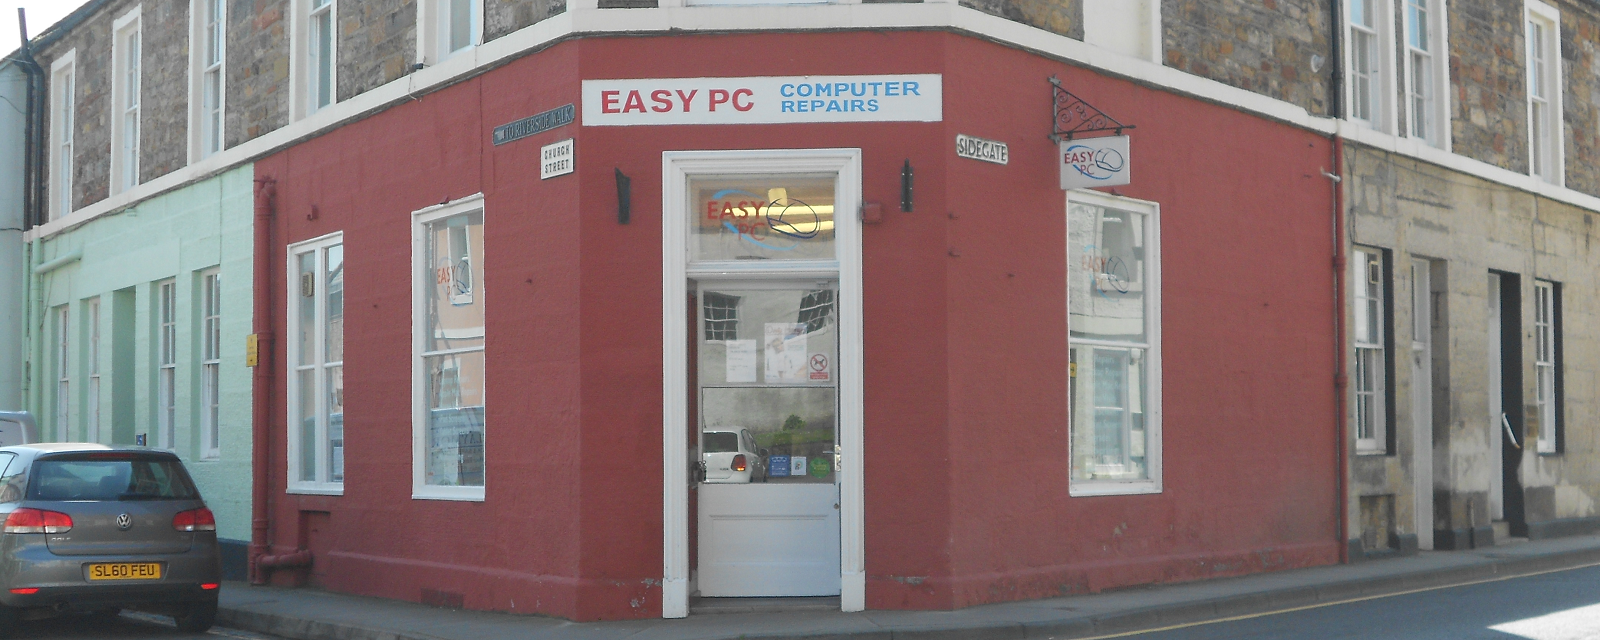 haddington pc repair shop